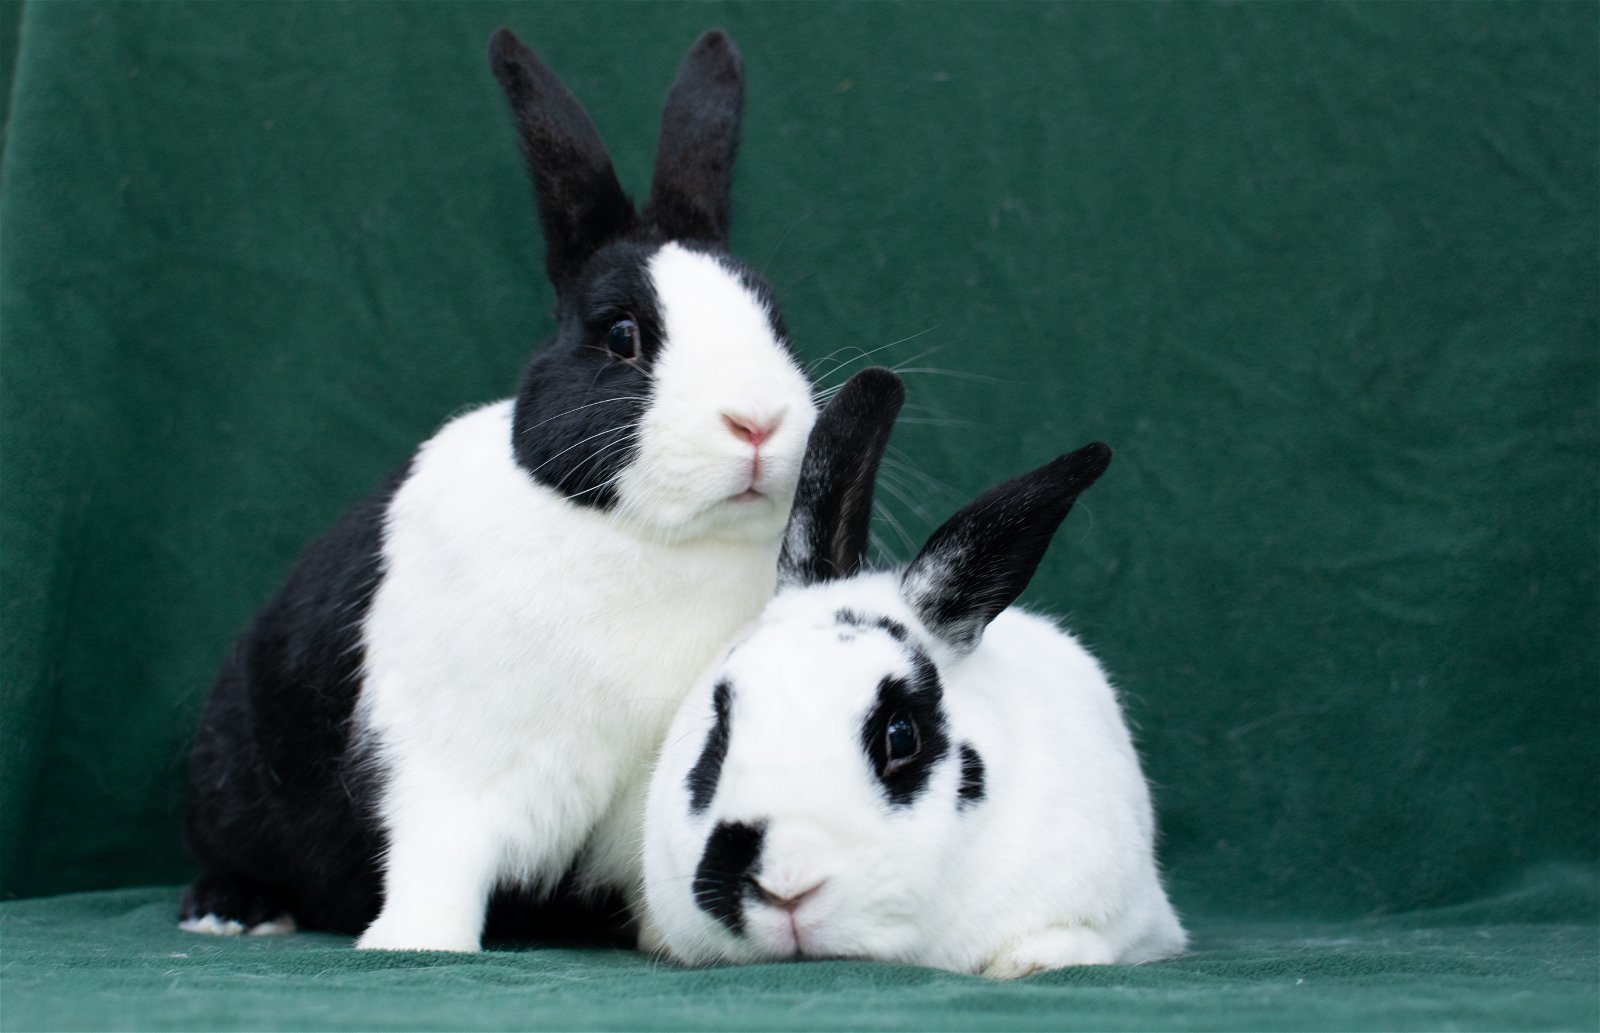 adoptable Rabbit in Baton Rouge, LA named Wigglytuff & Jigglypuff